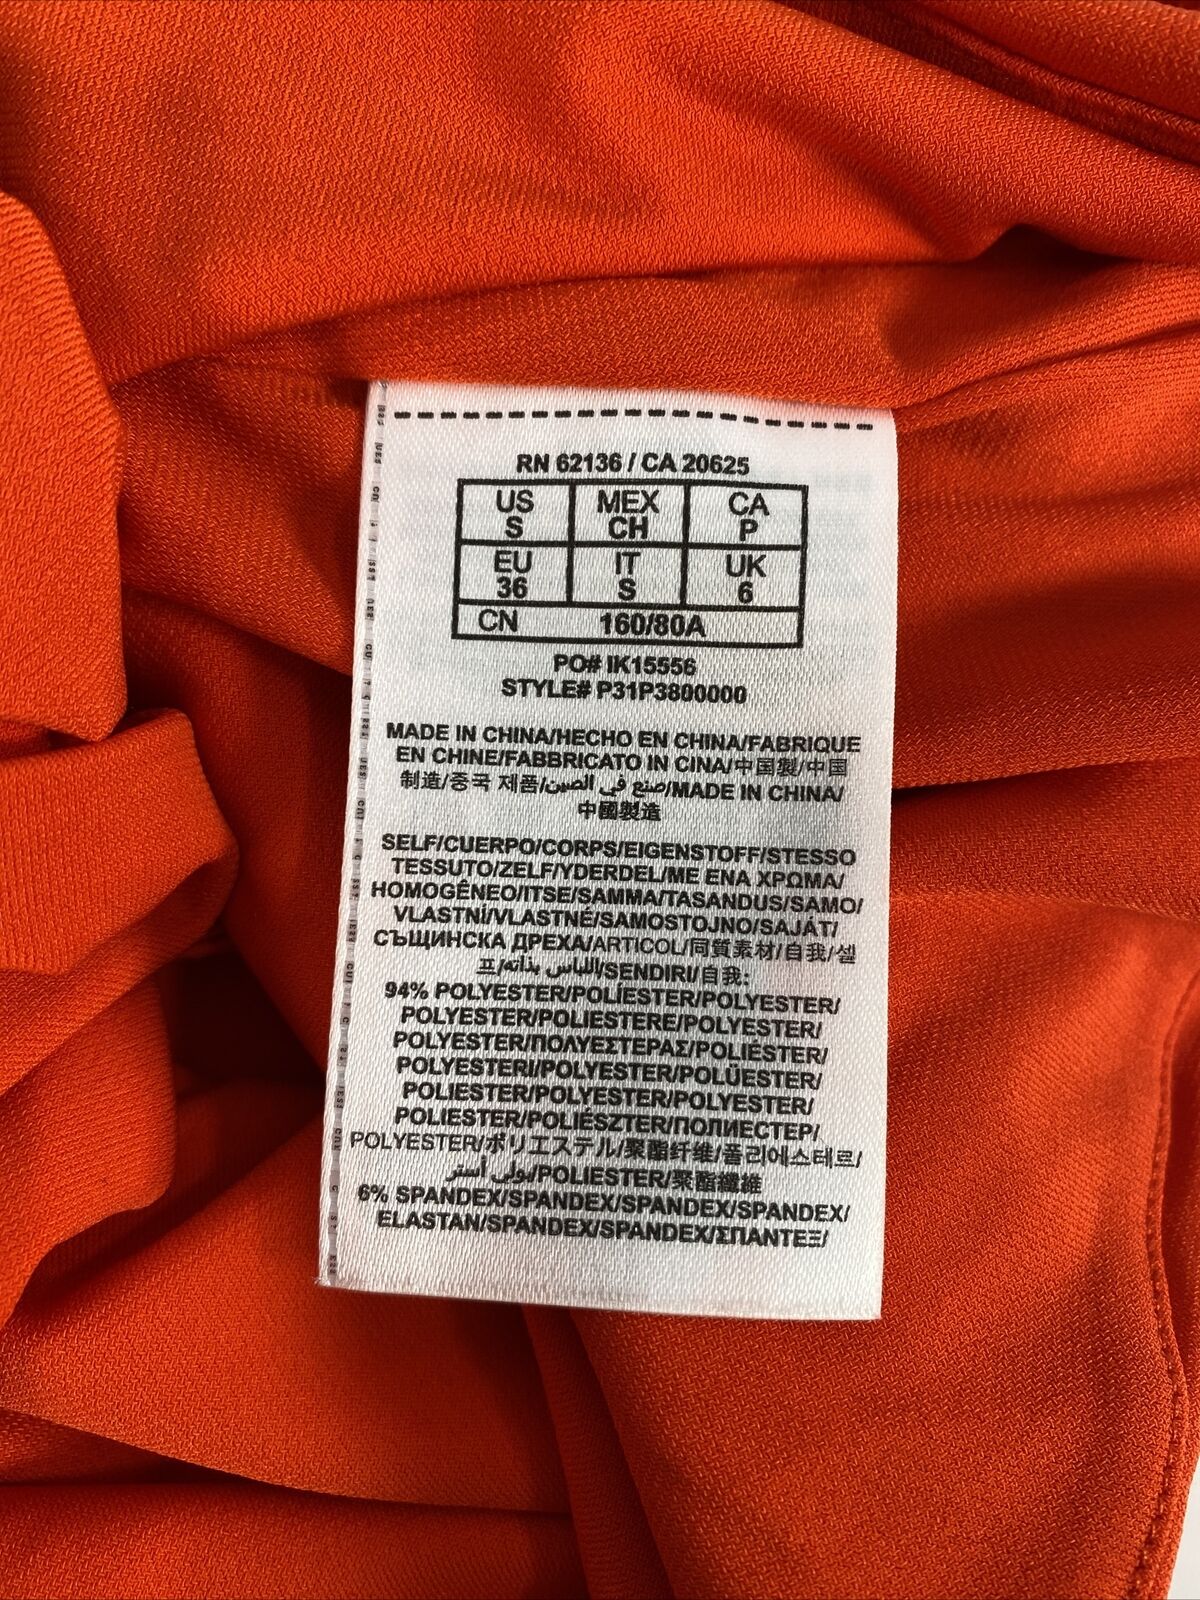 NUEVO Guess by Marciano Camiseta sin mangas con cuello halter naranja para mujer - S